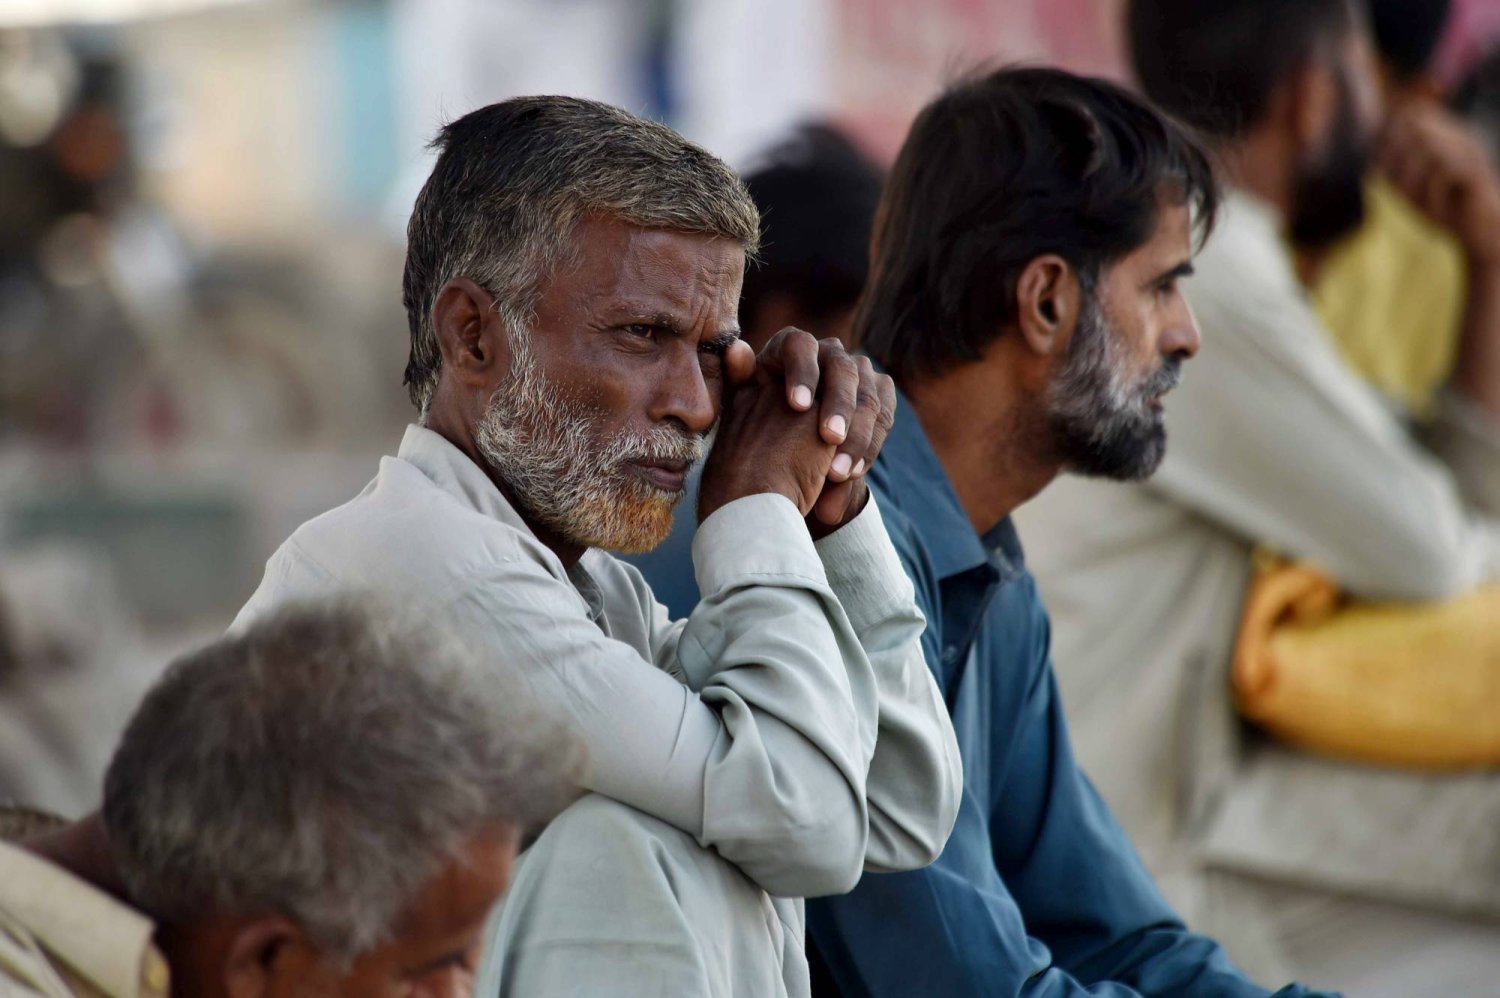 عمال يعملون بأجر يومي ينتظرون الحصول على عمل في كراتشي بباكستان (إ.ب.أ)